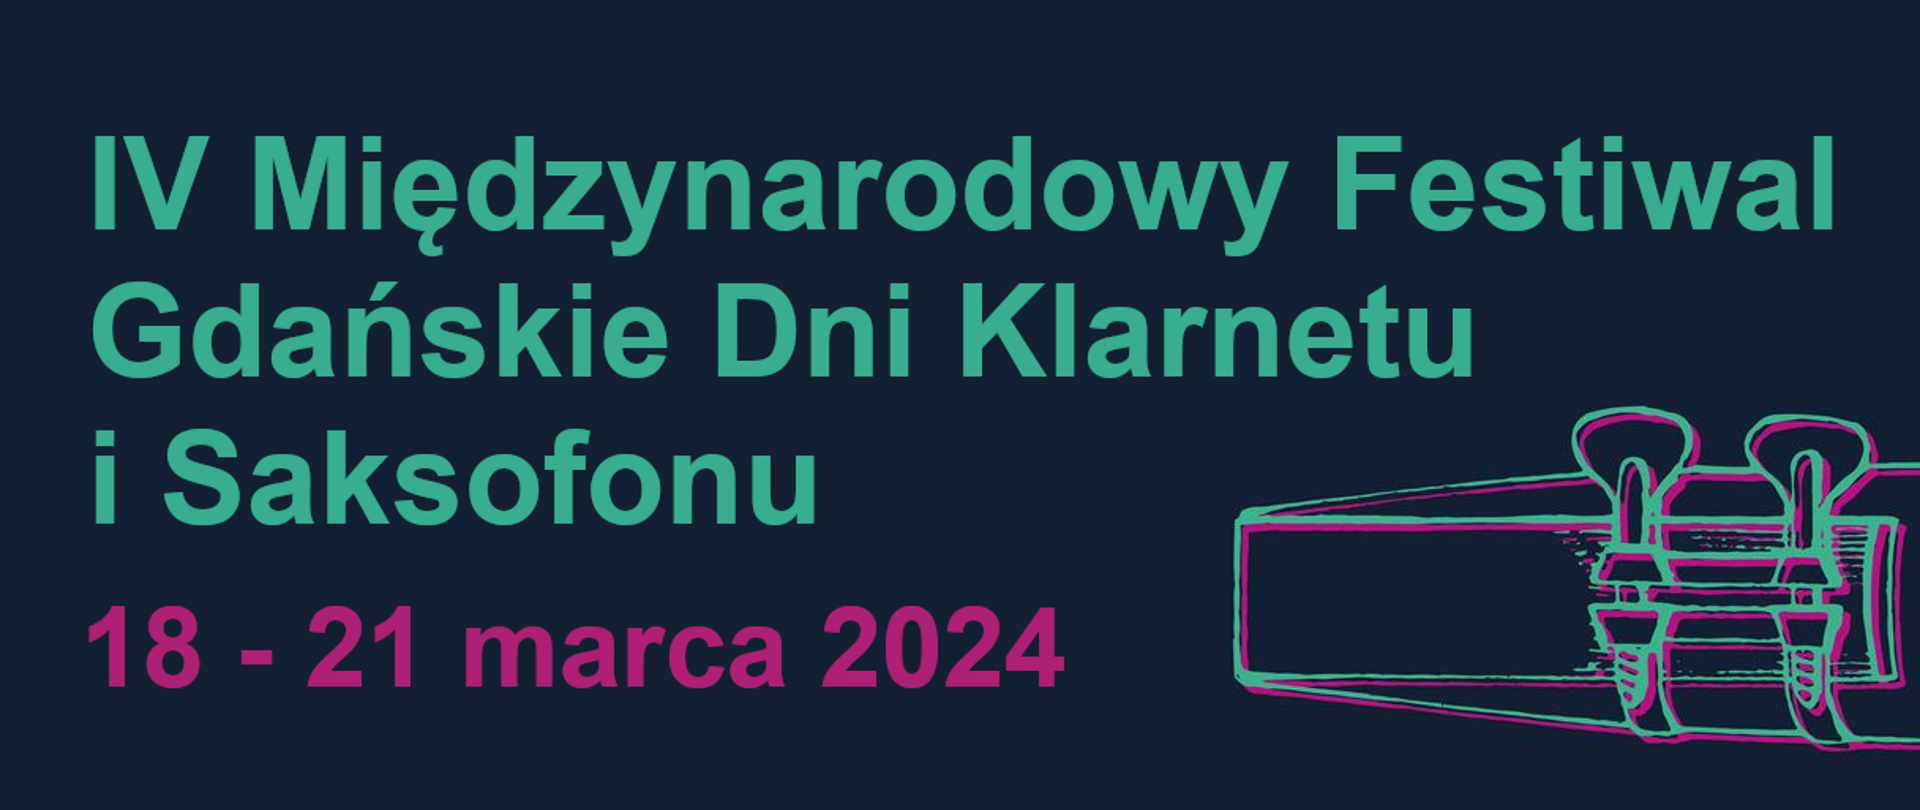 Na ciemnym granatowym tle jasnym fontem napis IV Międzynarodowy Festiwal Gdańskie Dni Klarnetu i Saksofonu. 18 - 21 marca 2024